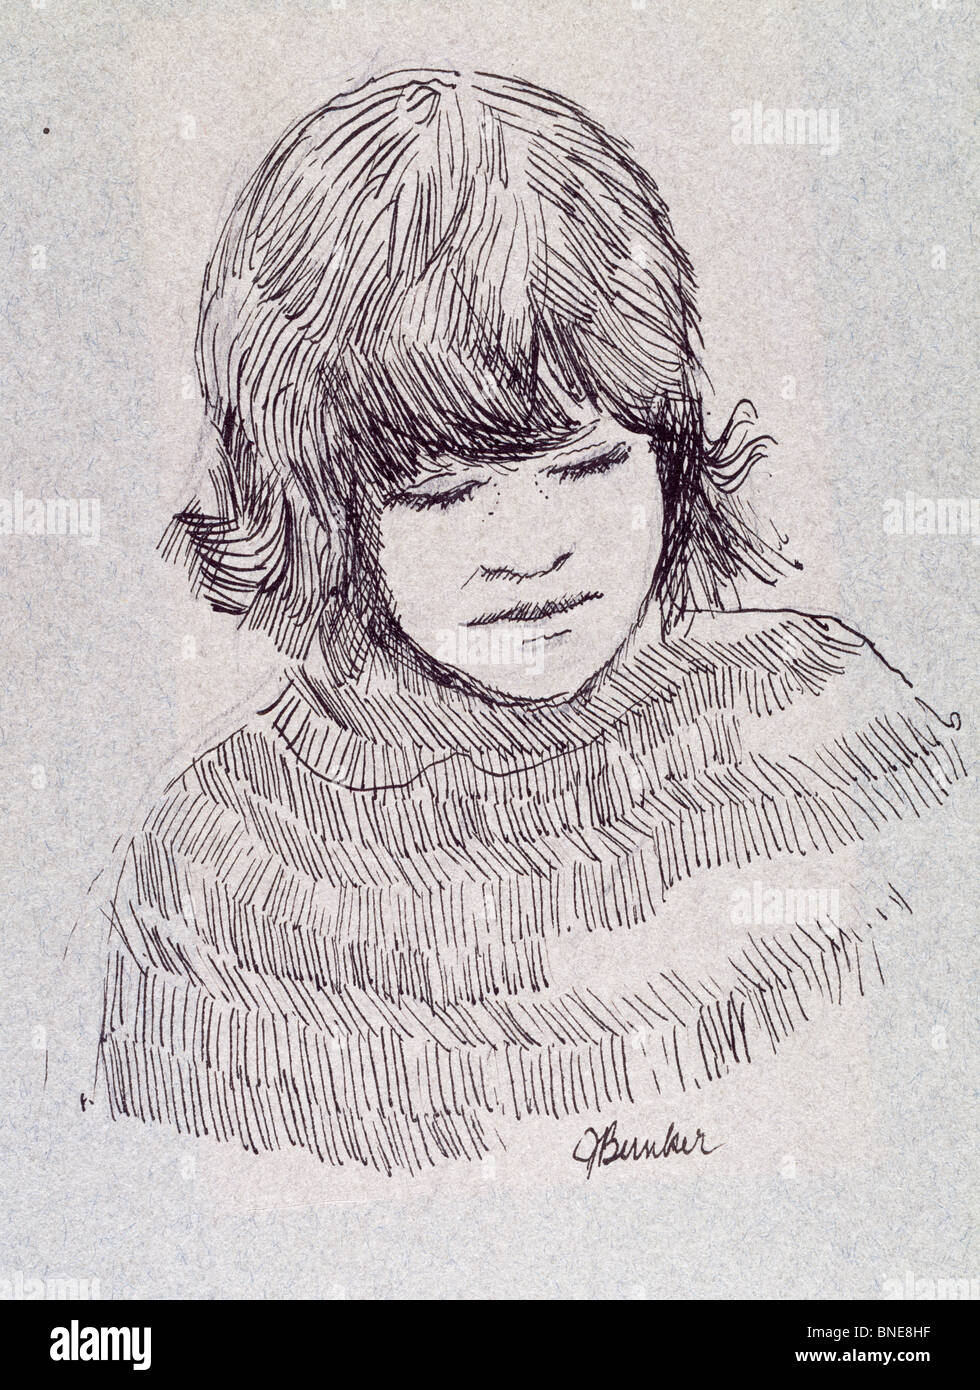 Enfant II par John Bunker, plume et encre, 1973, 20e siècle Banque D'Images